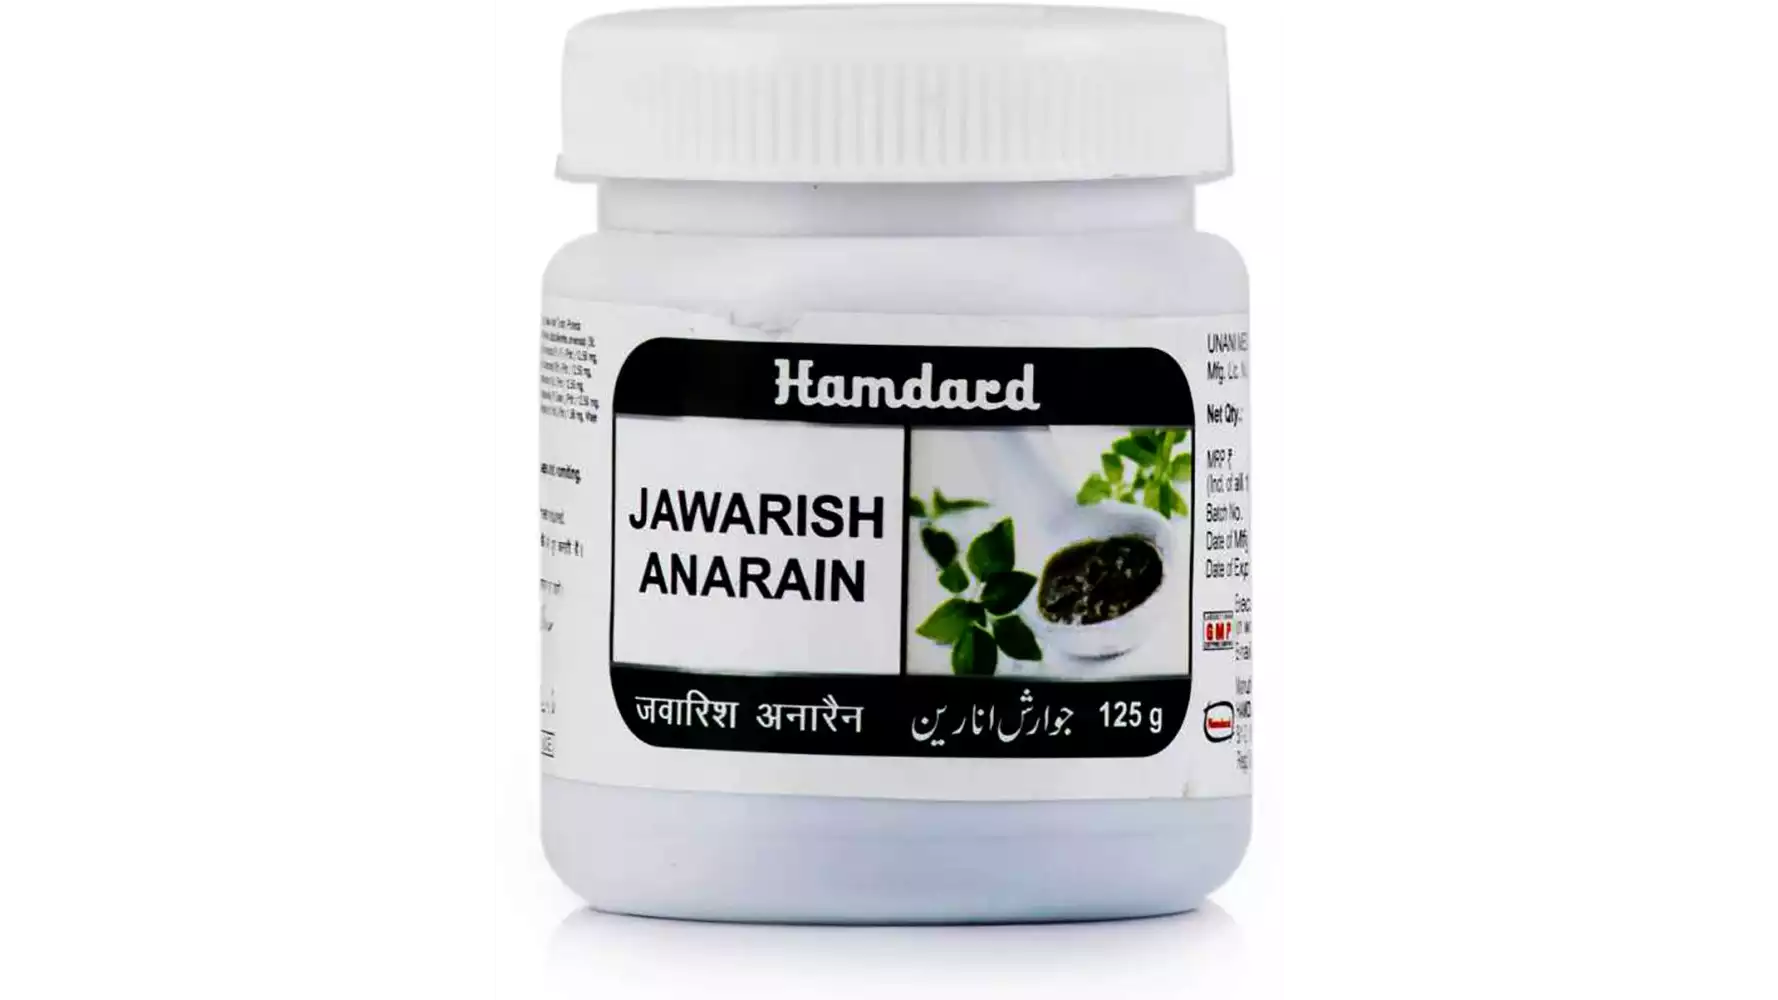 Hamdard Jawarish Anarain (125g)